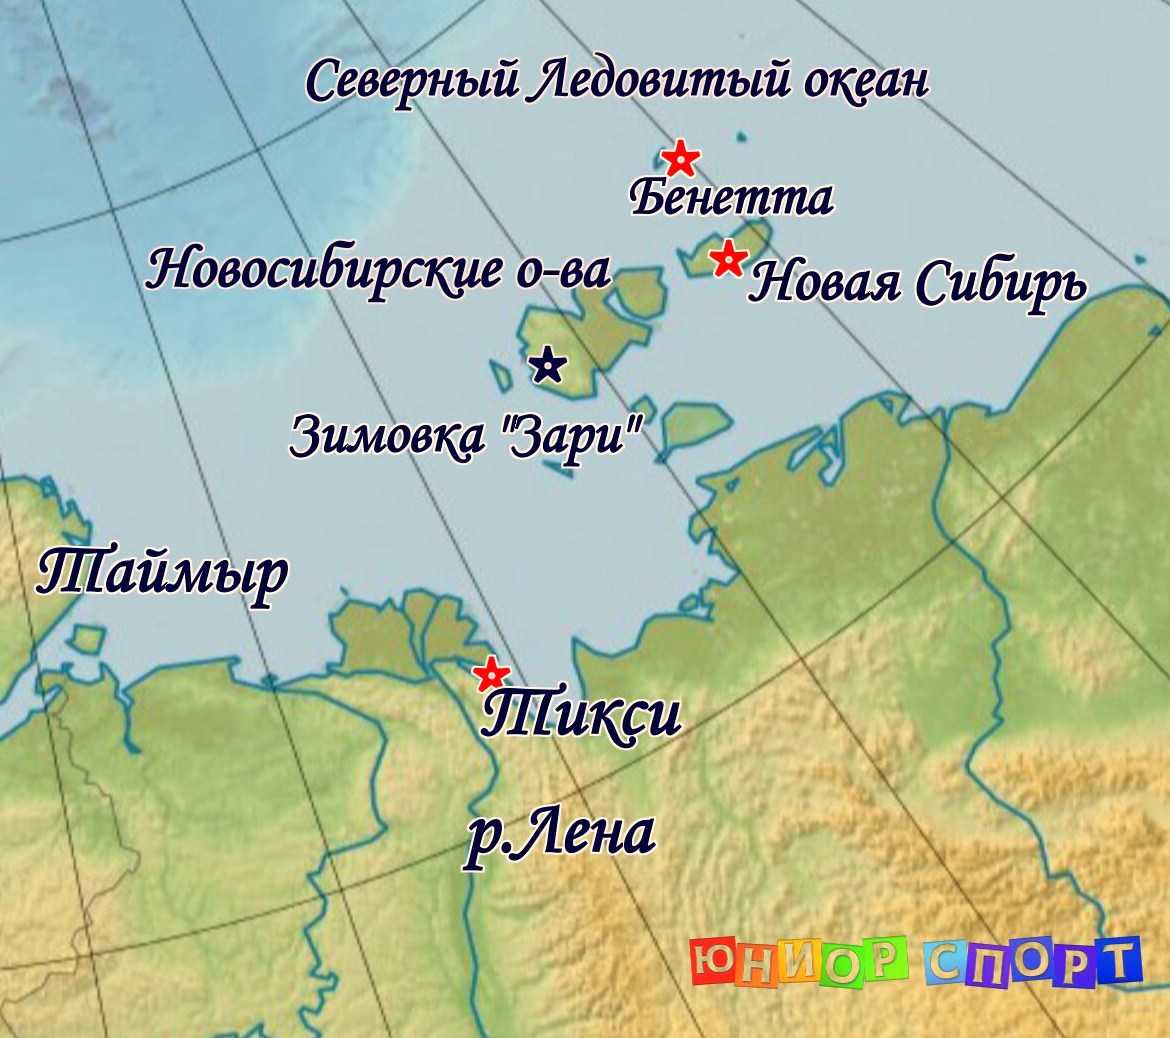 Где на карте полуостров таймыр. Мыс Челюскин на полуострове Таймыр на карте. Полуостров Таймыр мыс Челюскин. Мыс Челюскин на полуострове Таймыр на карте России. Карта мыс Челюскин на карте.